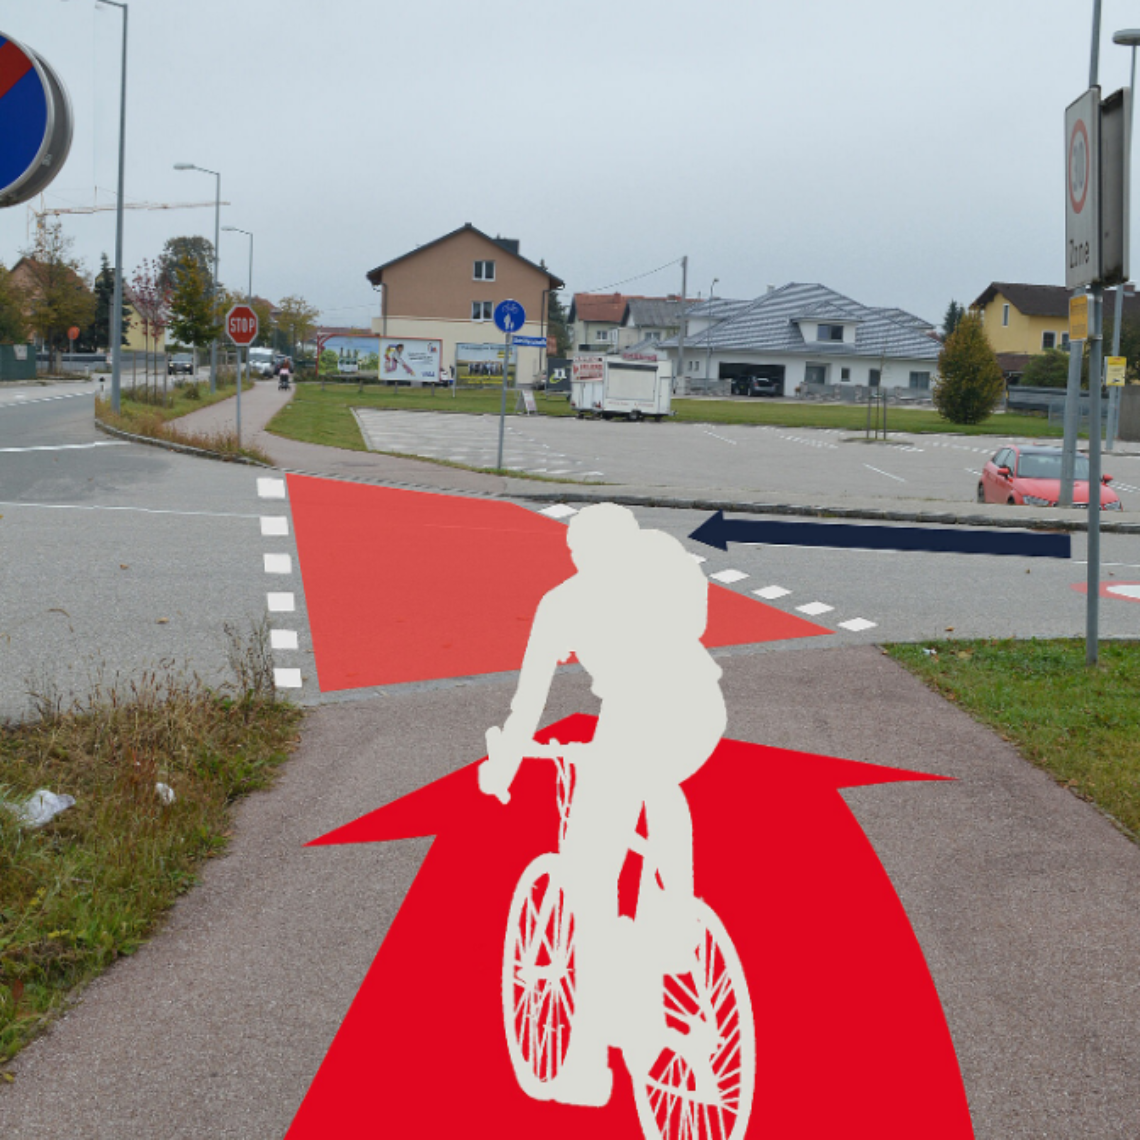 Grafik visualisiert Radfahrerüberfahrt mit roter flächiger Markierung